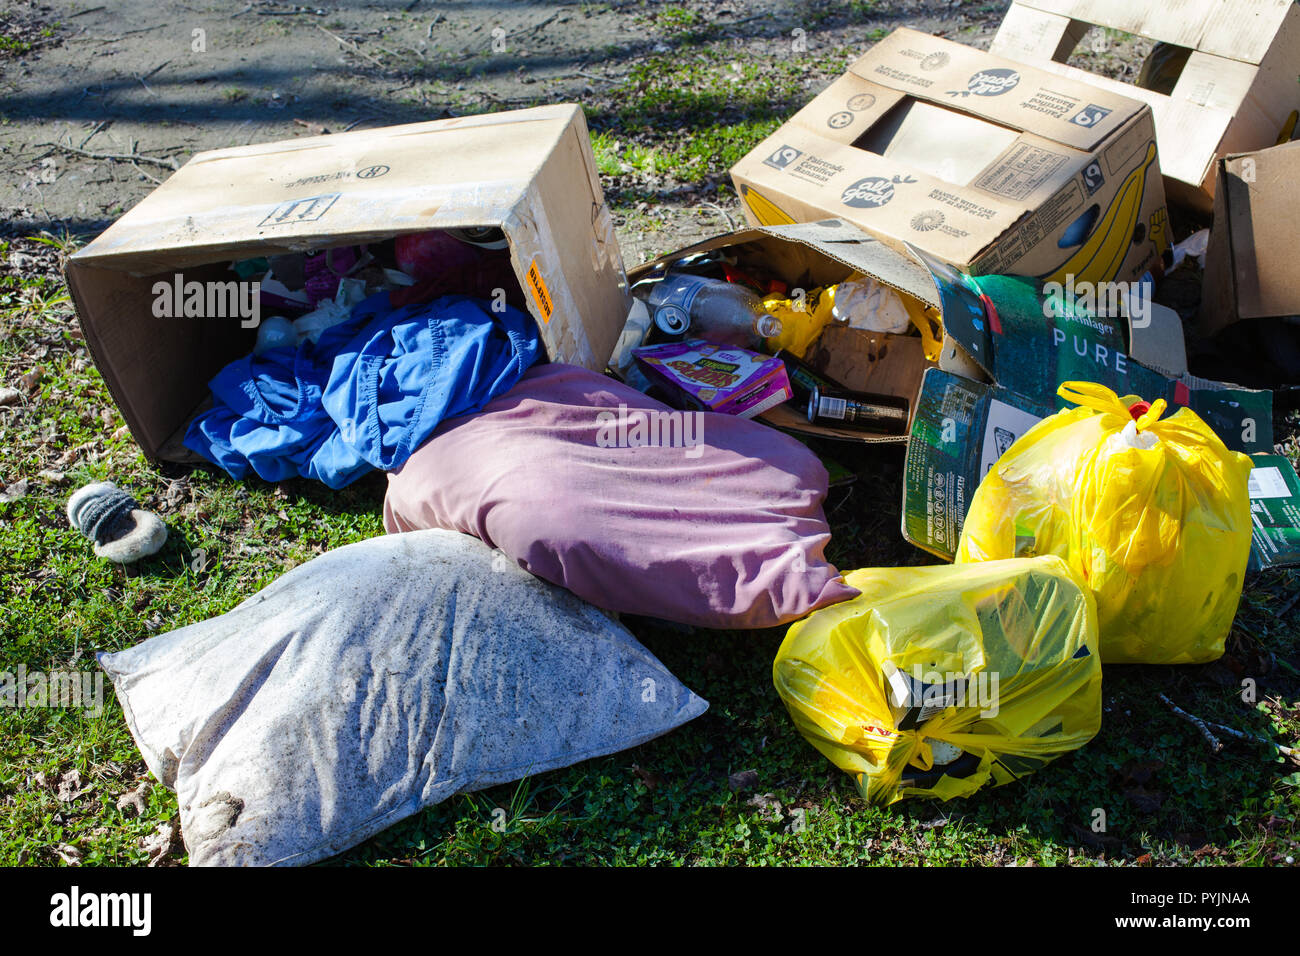 Un regard sur la vie en Nouvelle-Zélande. Les ordures ménagères ont été jetées au bord d'une rivière. Les Kiwis n'ont jamais été gentils avec leur belle campagne. Banque D'Images